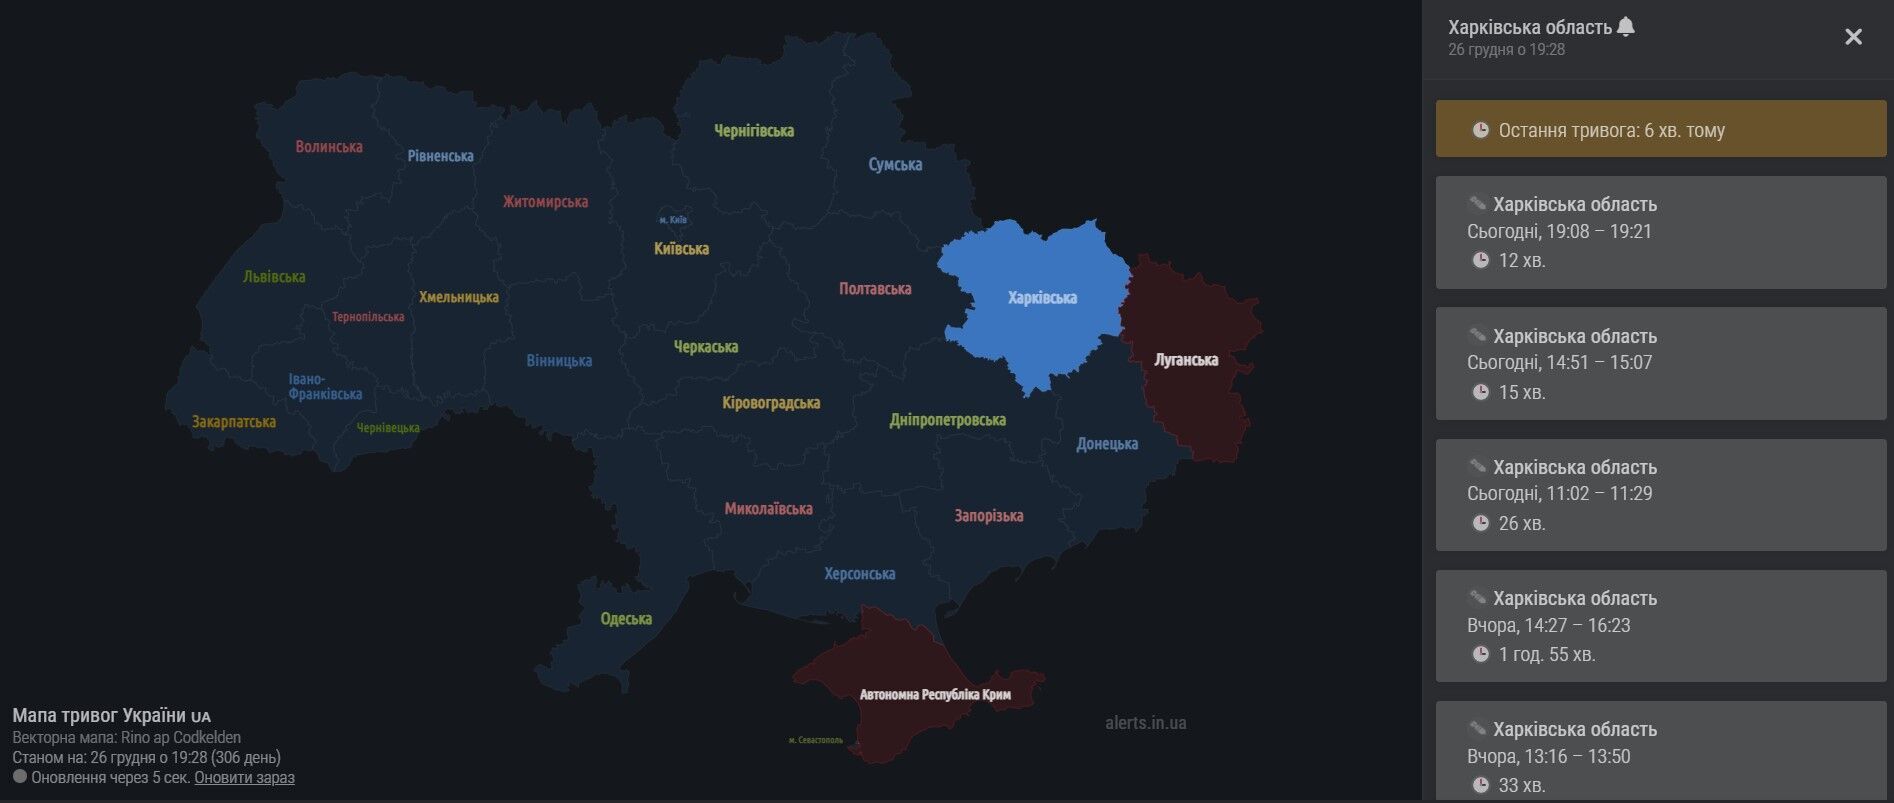 Харьковская область: карта воздушных тревог